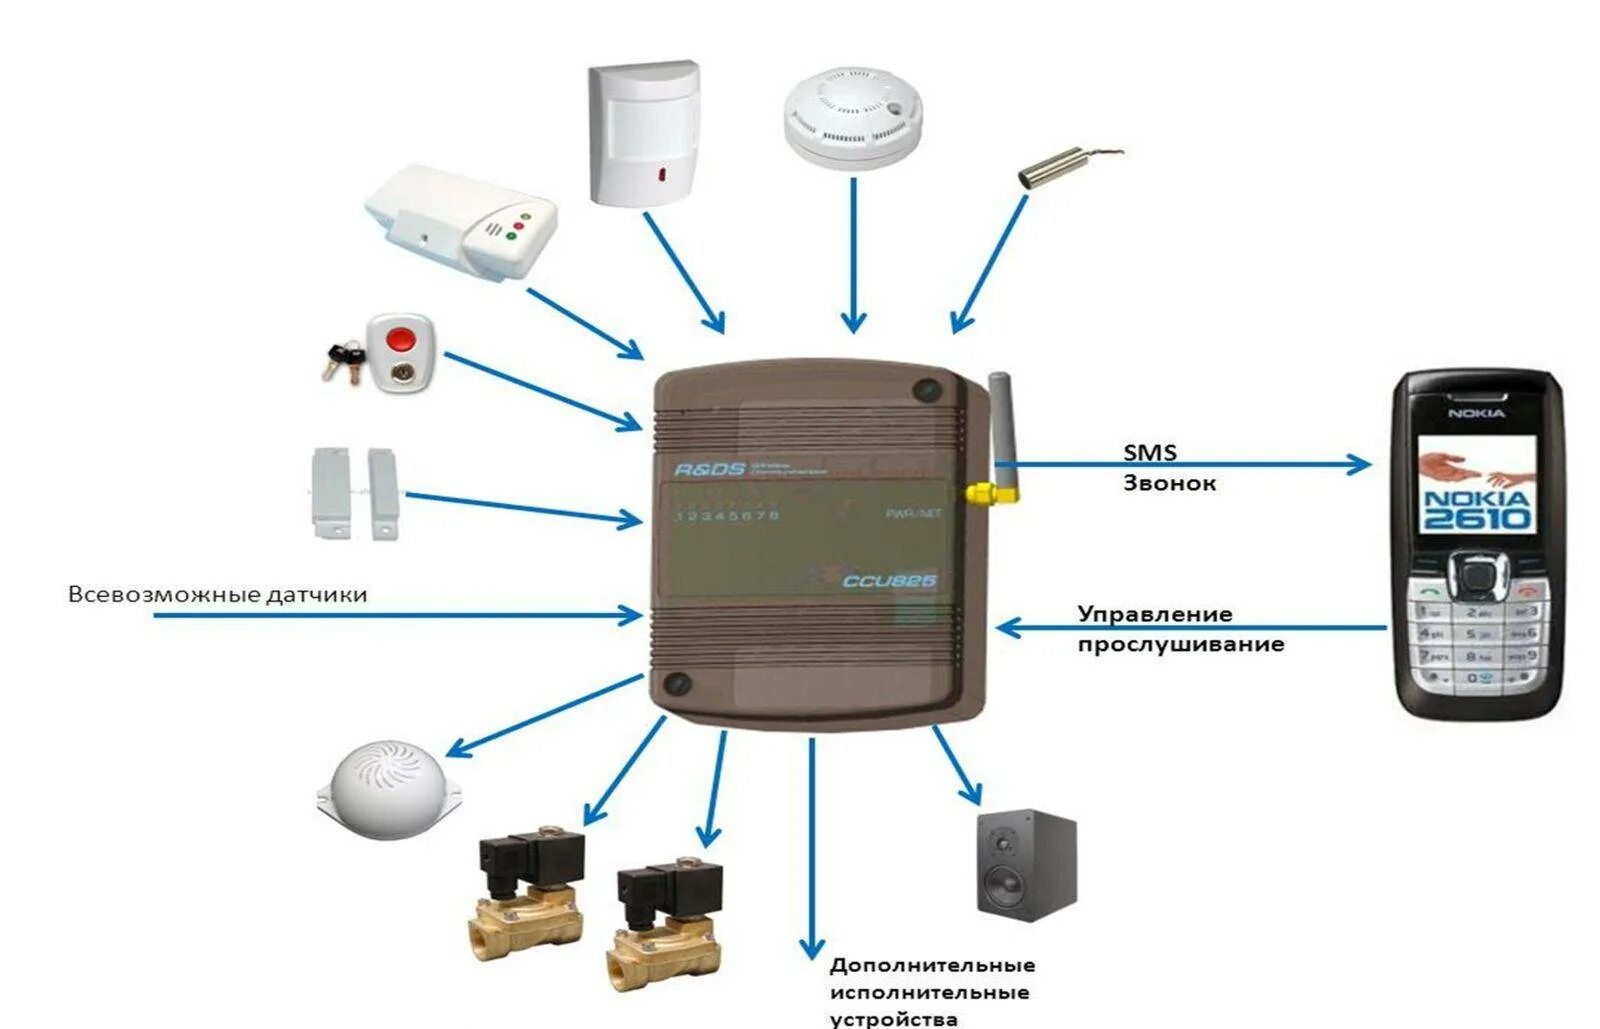 Настройка gsm модуля. Схема охранной сигнализации с GSM датчиком. GSM модуль для сигнализации. Автономная охранная сигнализация GSM. Схема работы автономная охранная сигнализация GSM.